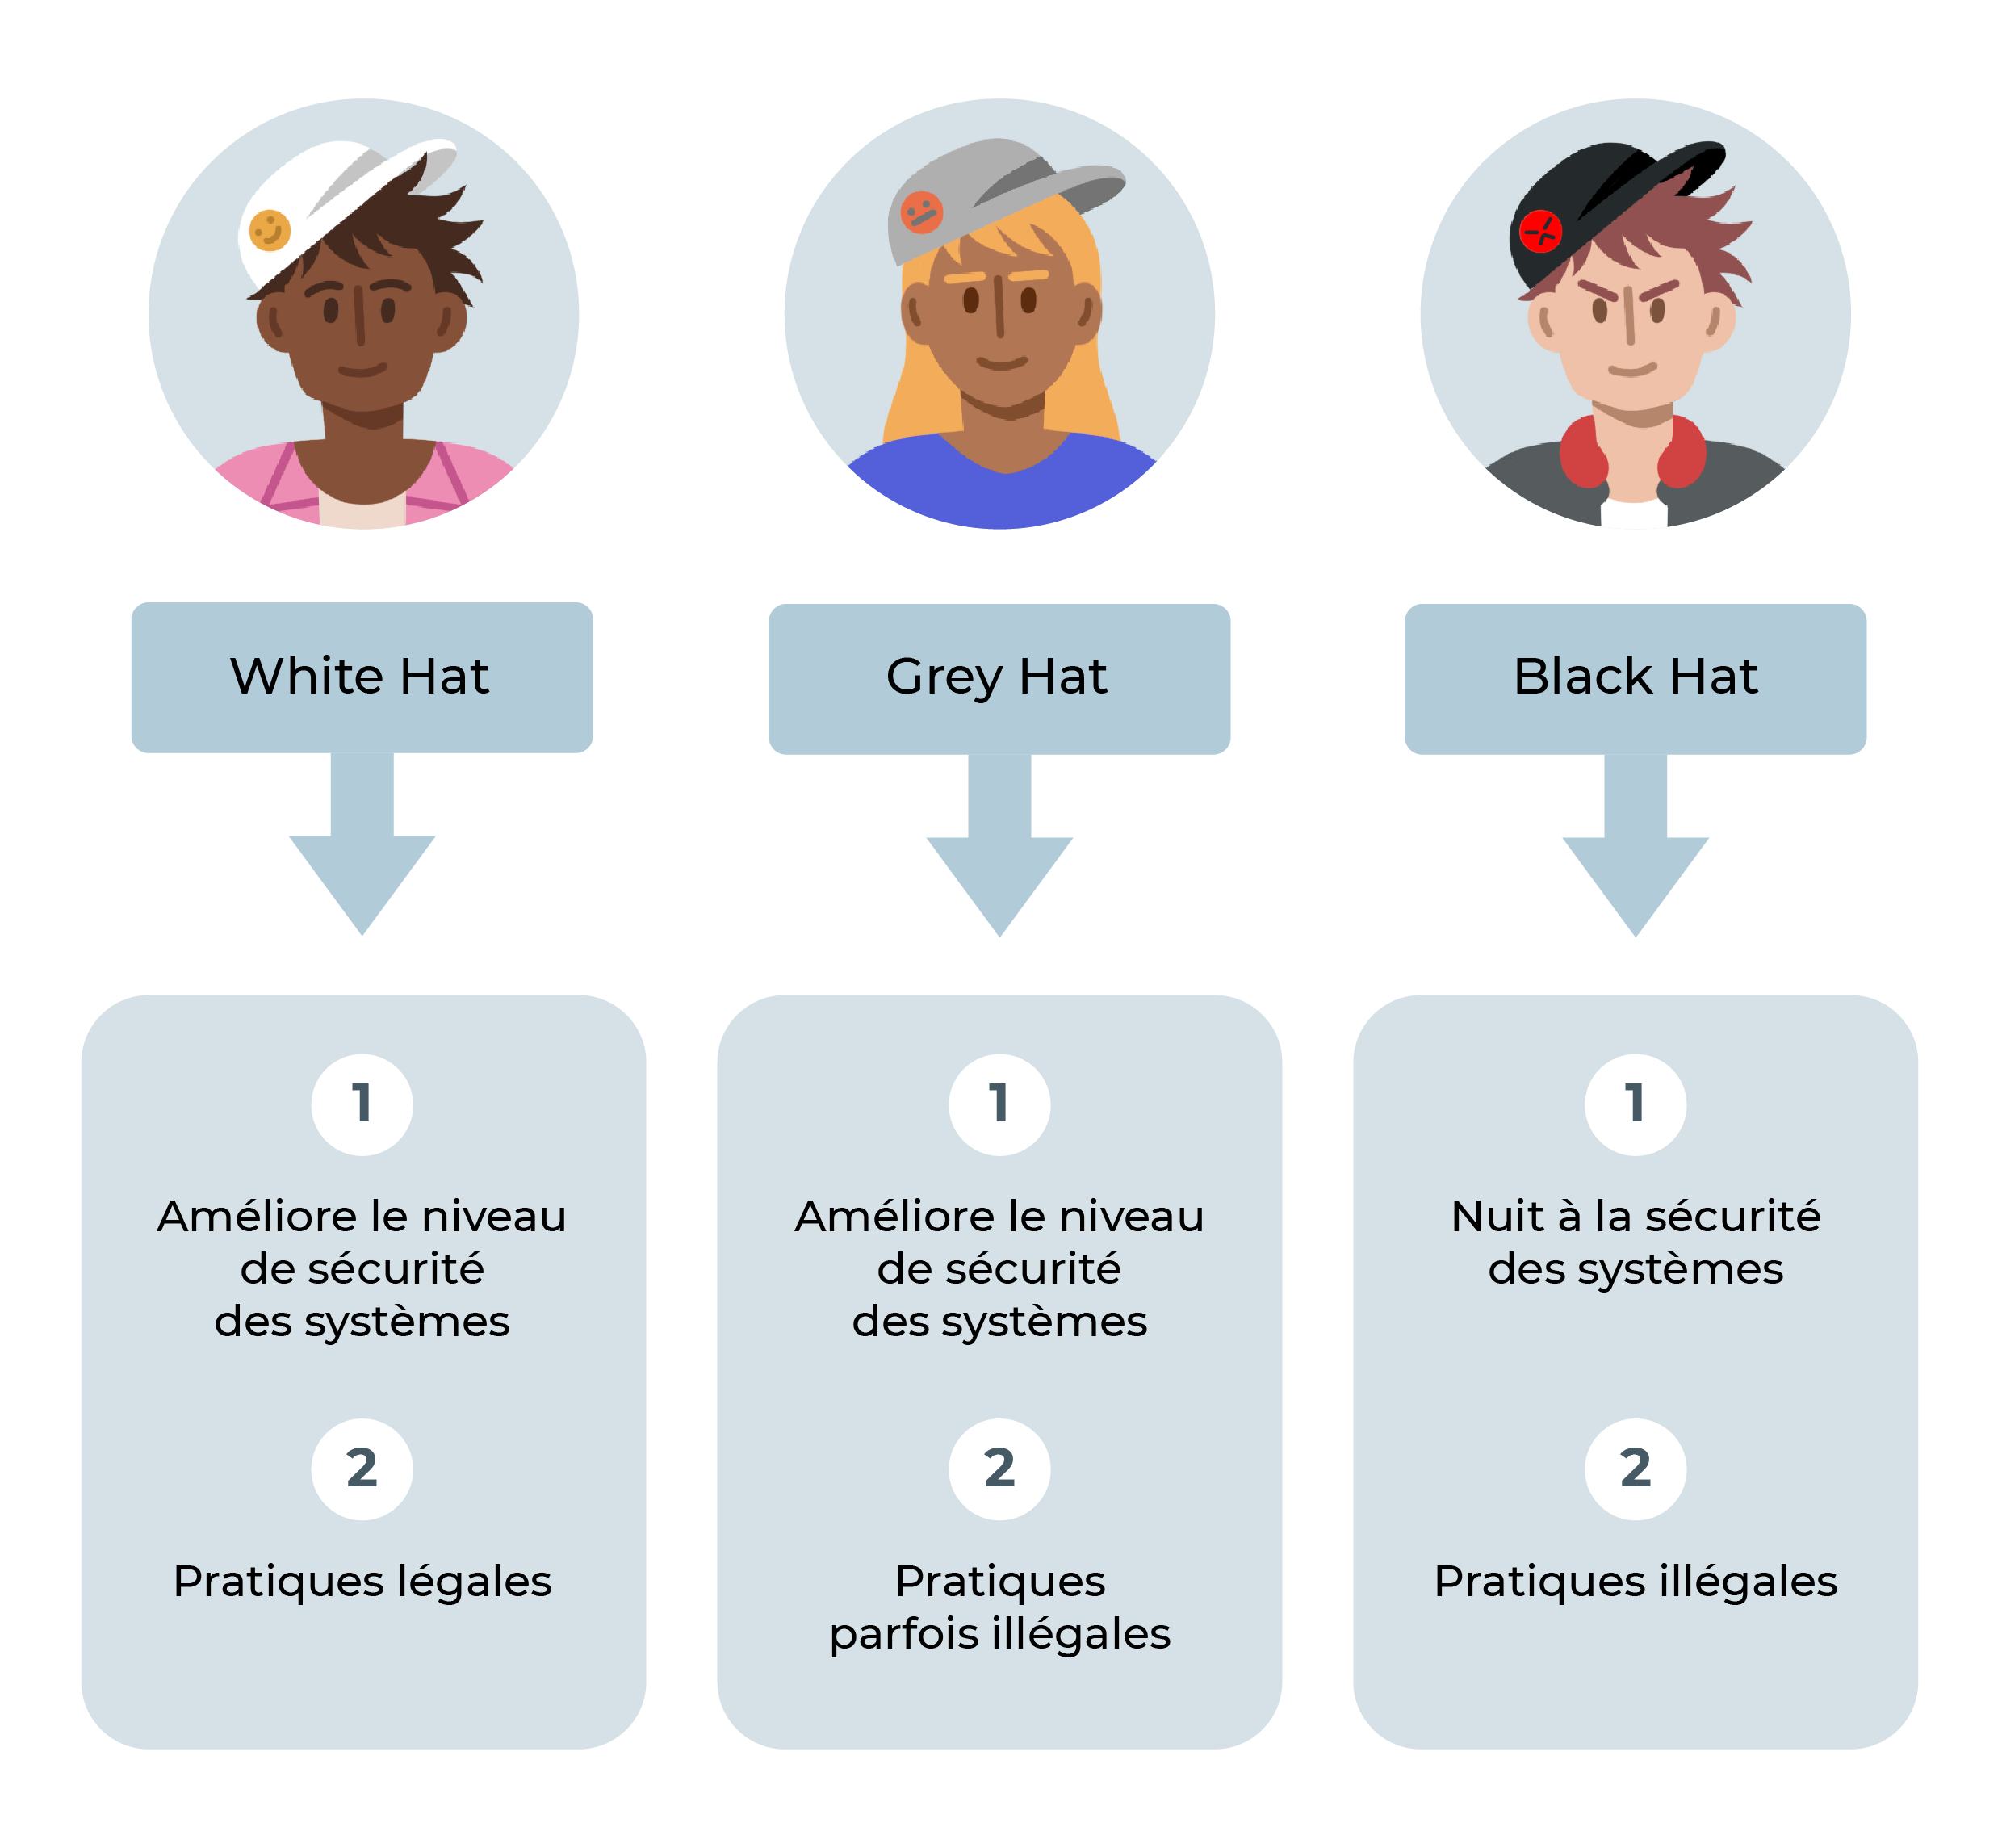 Le white hat améliore le niveau de sécurité des systèmes, dans un cadre légal. Le grey hat aussi mais il a parfois des pratiques illégales. Le black hat est mal intentionné, il nuit à la sécurité des systèmes et a des pratiques illégales.